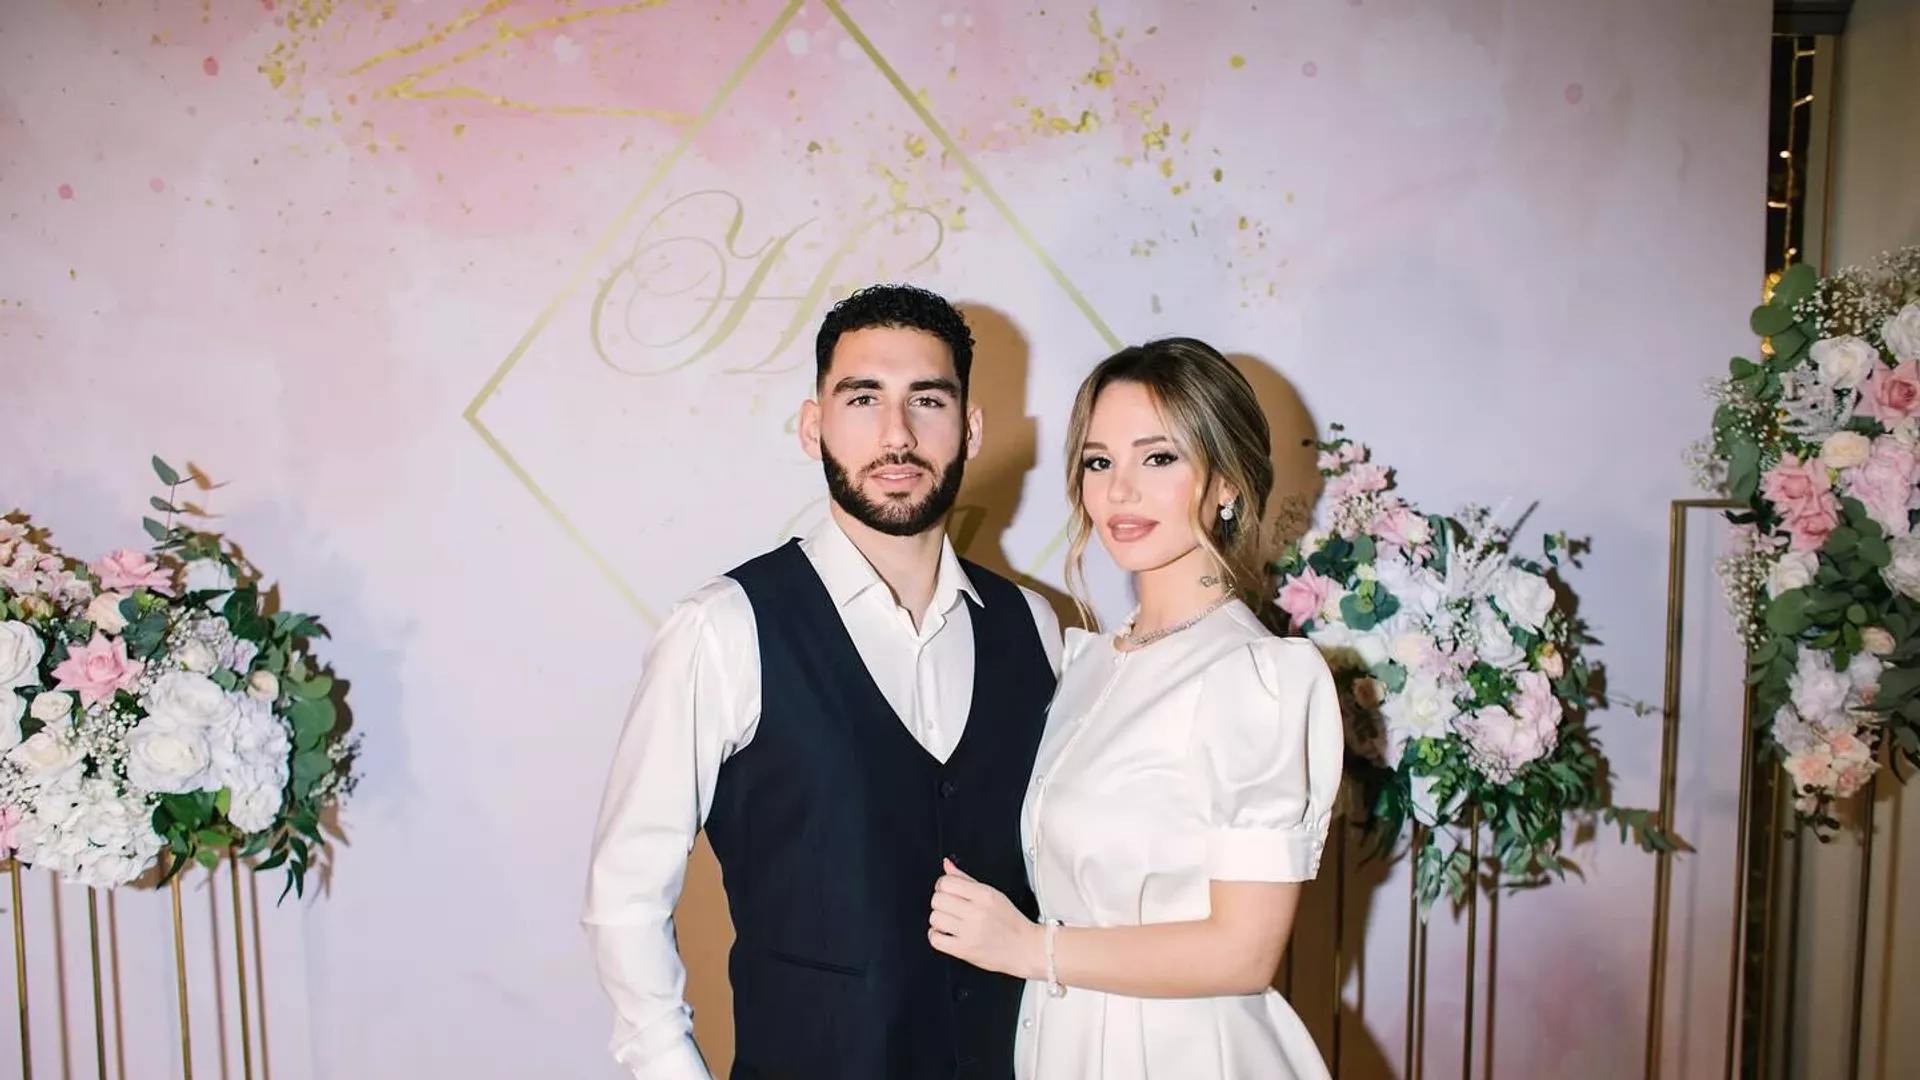 Հայաստանի հավաքականի պաշտպան Նաիր Տիկնիզյանն ամուսնացել է. ո՞վ է նրա ընտրյալը